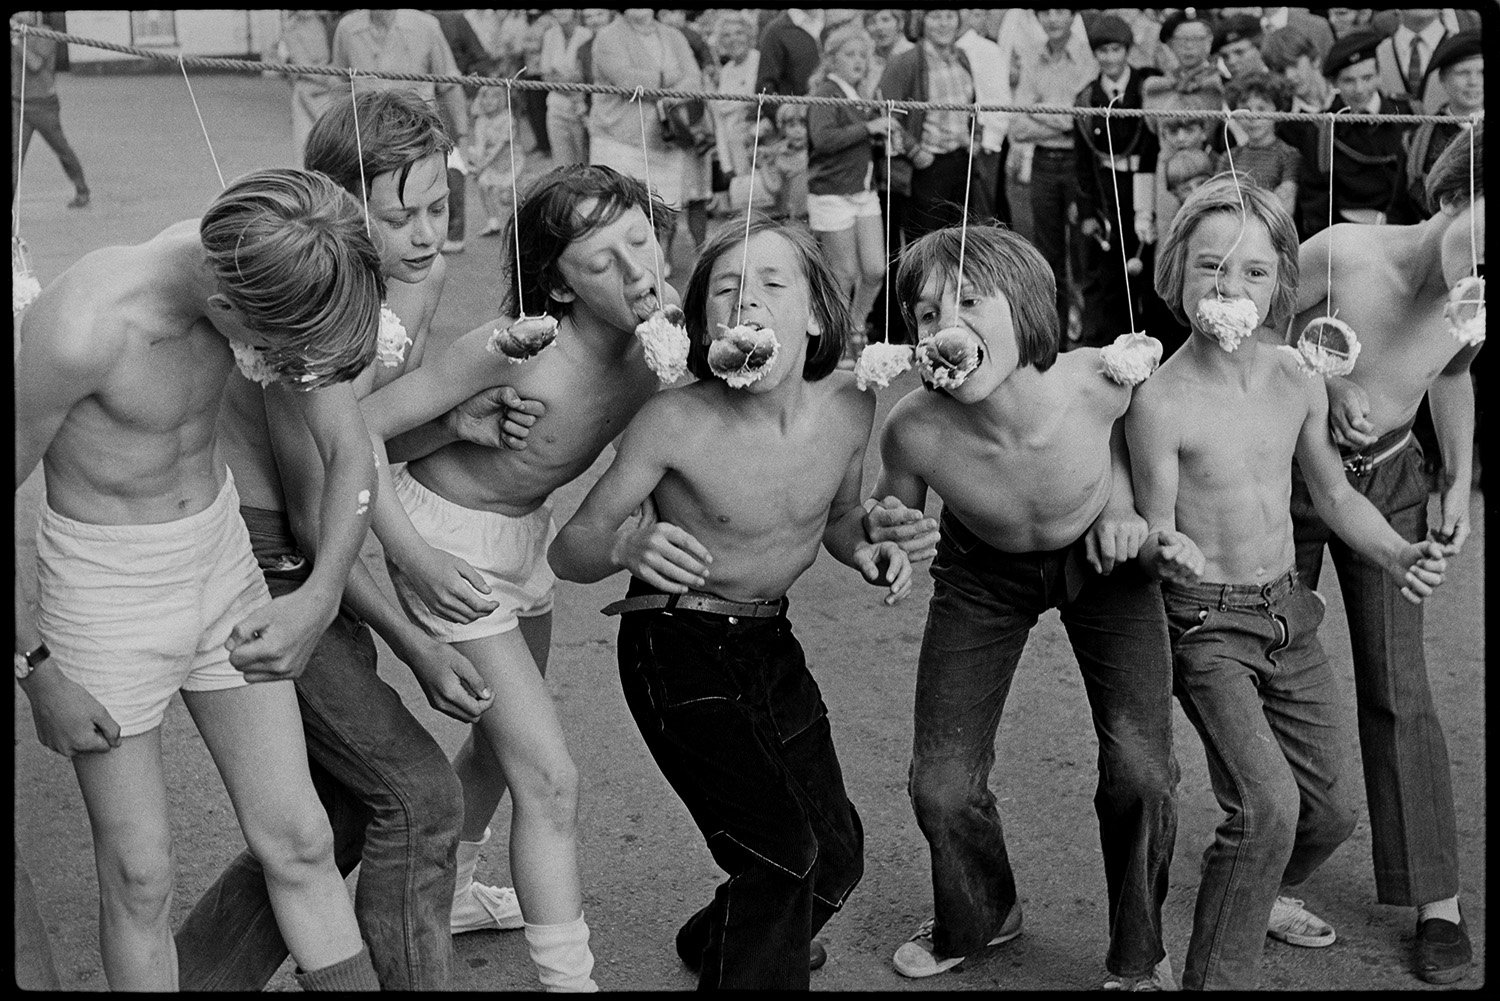 DEA-03-0061-35 Boys competeing to eat iced buns, Chulmleigh Fair, 1972.jpg